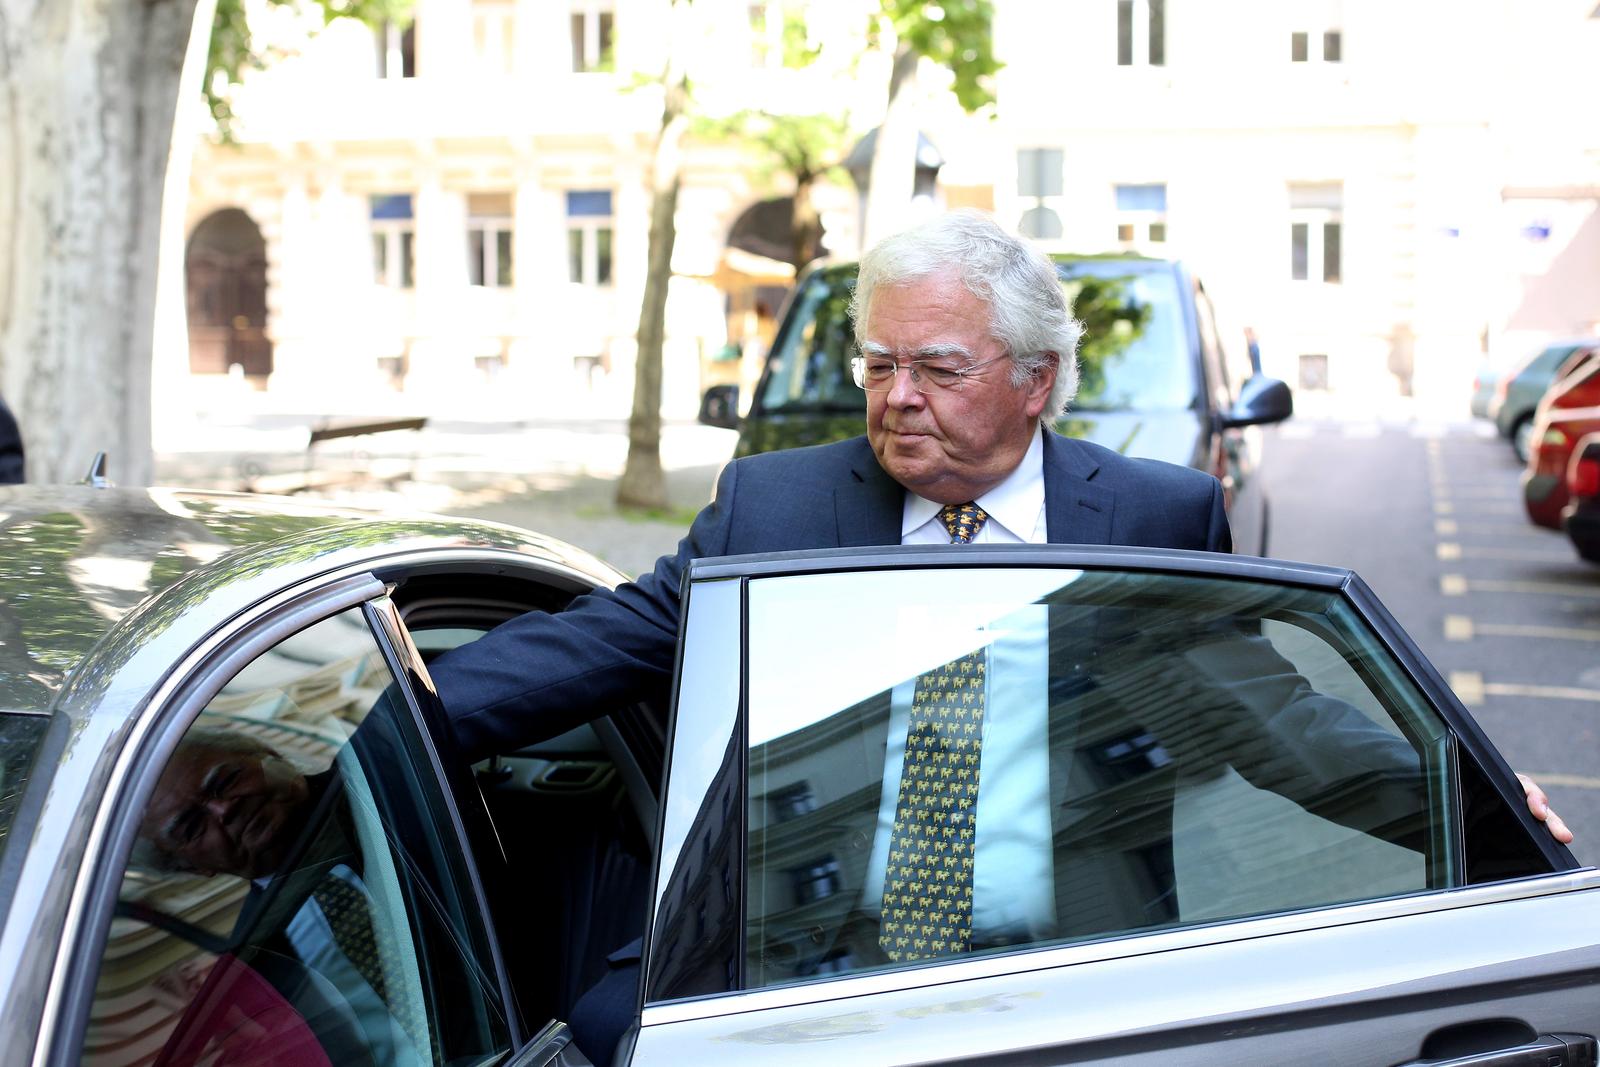 17.05.2017., Zagreb - George Djuro Gavrilovic izlazi sa Zupanijskog suda na Zrinjevcu. Photo: Boris Scitar/Vecernji list/PIXSELL